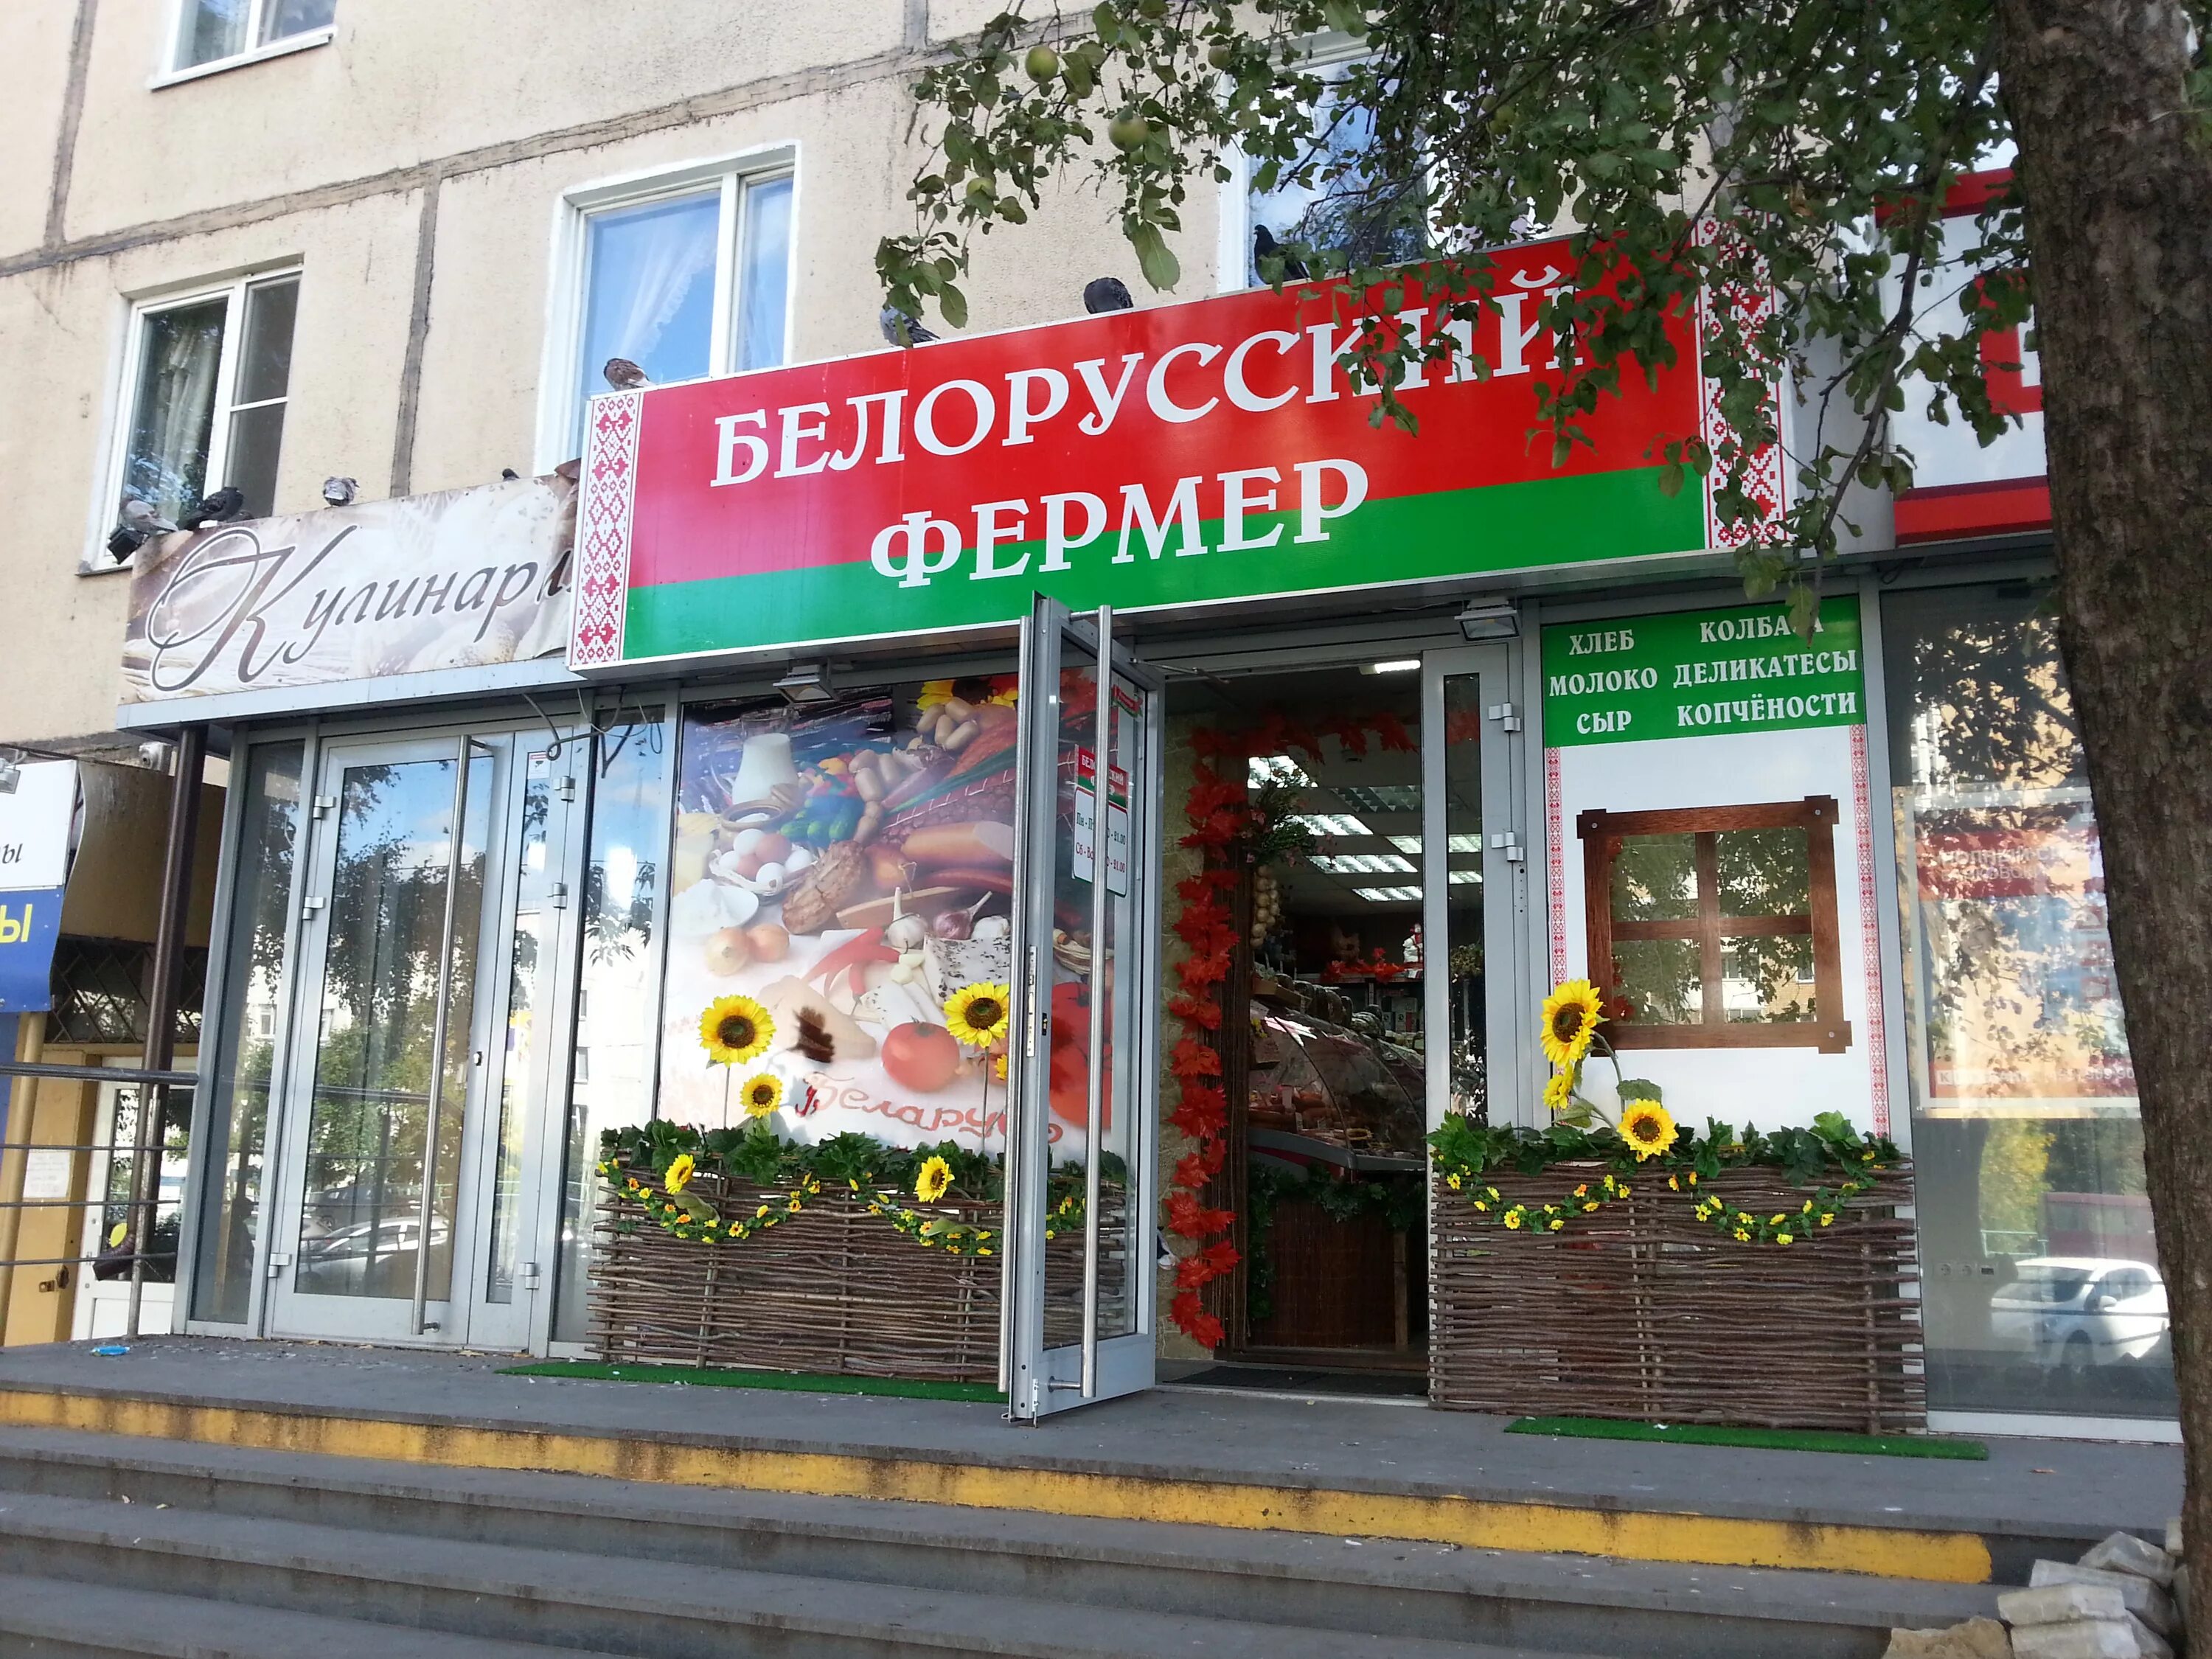 Сеть белорусских магазинов. Белорусский фермер магазины. Магазин белорусских продуктов. Магазин Белорусские товары. Продукция магазинов белорусский фермер.